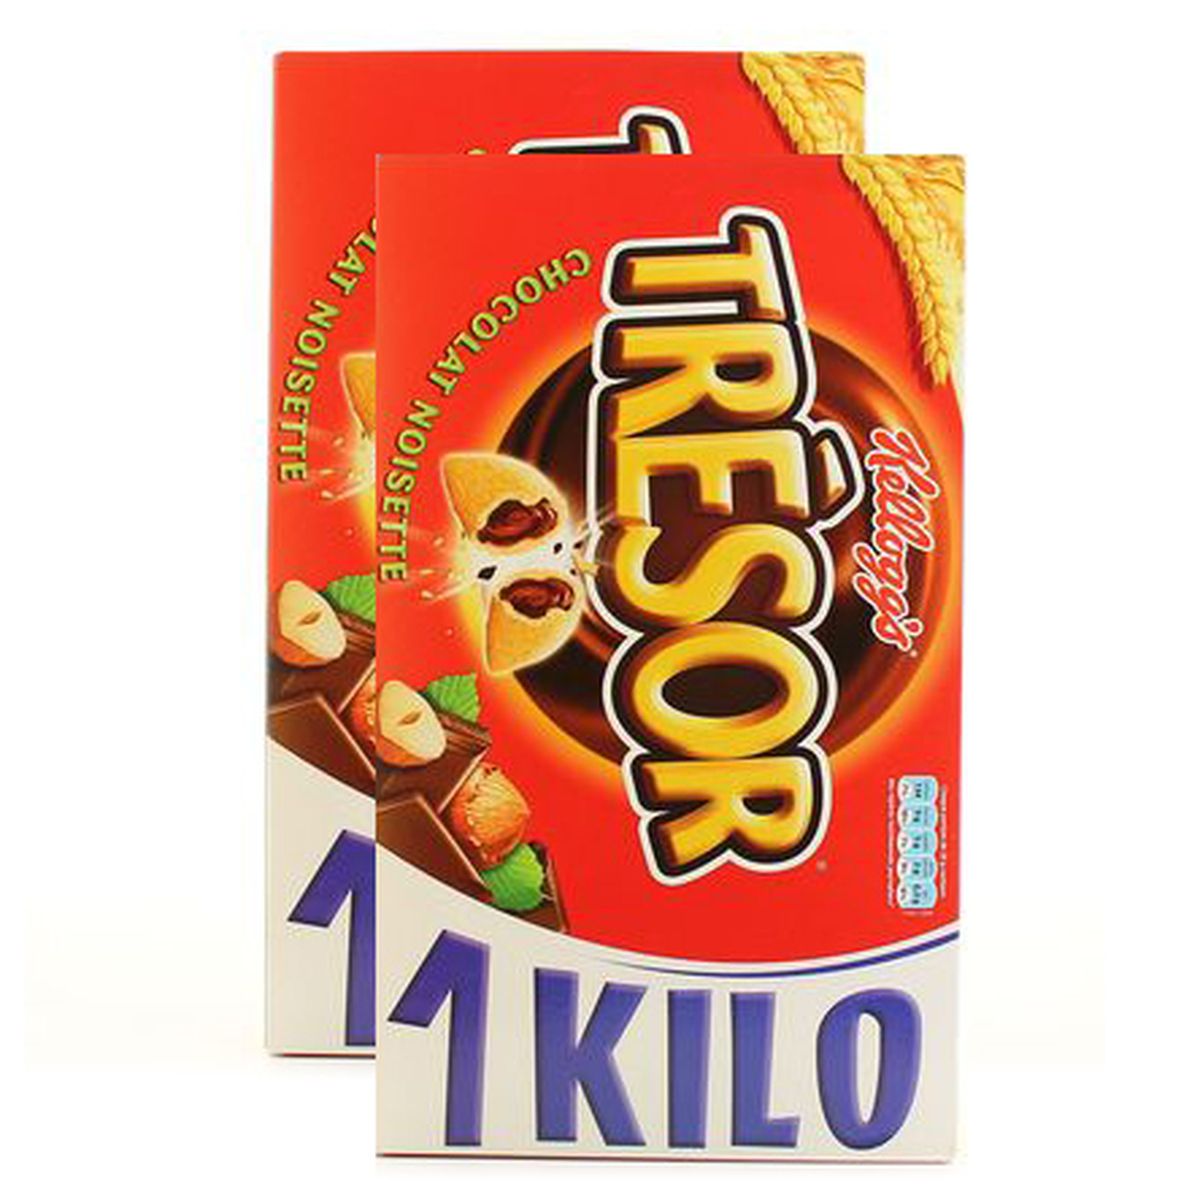 Promotion Kellogg's Céréales Trésor chocolat au lait, Lot de 2x1kg